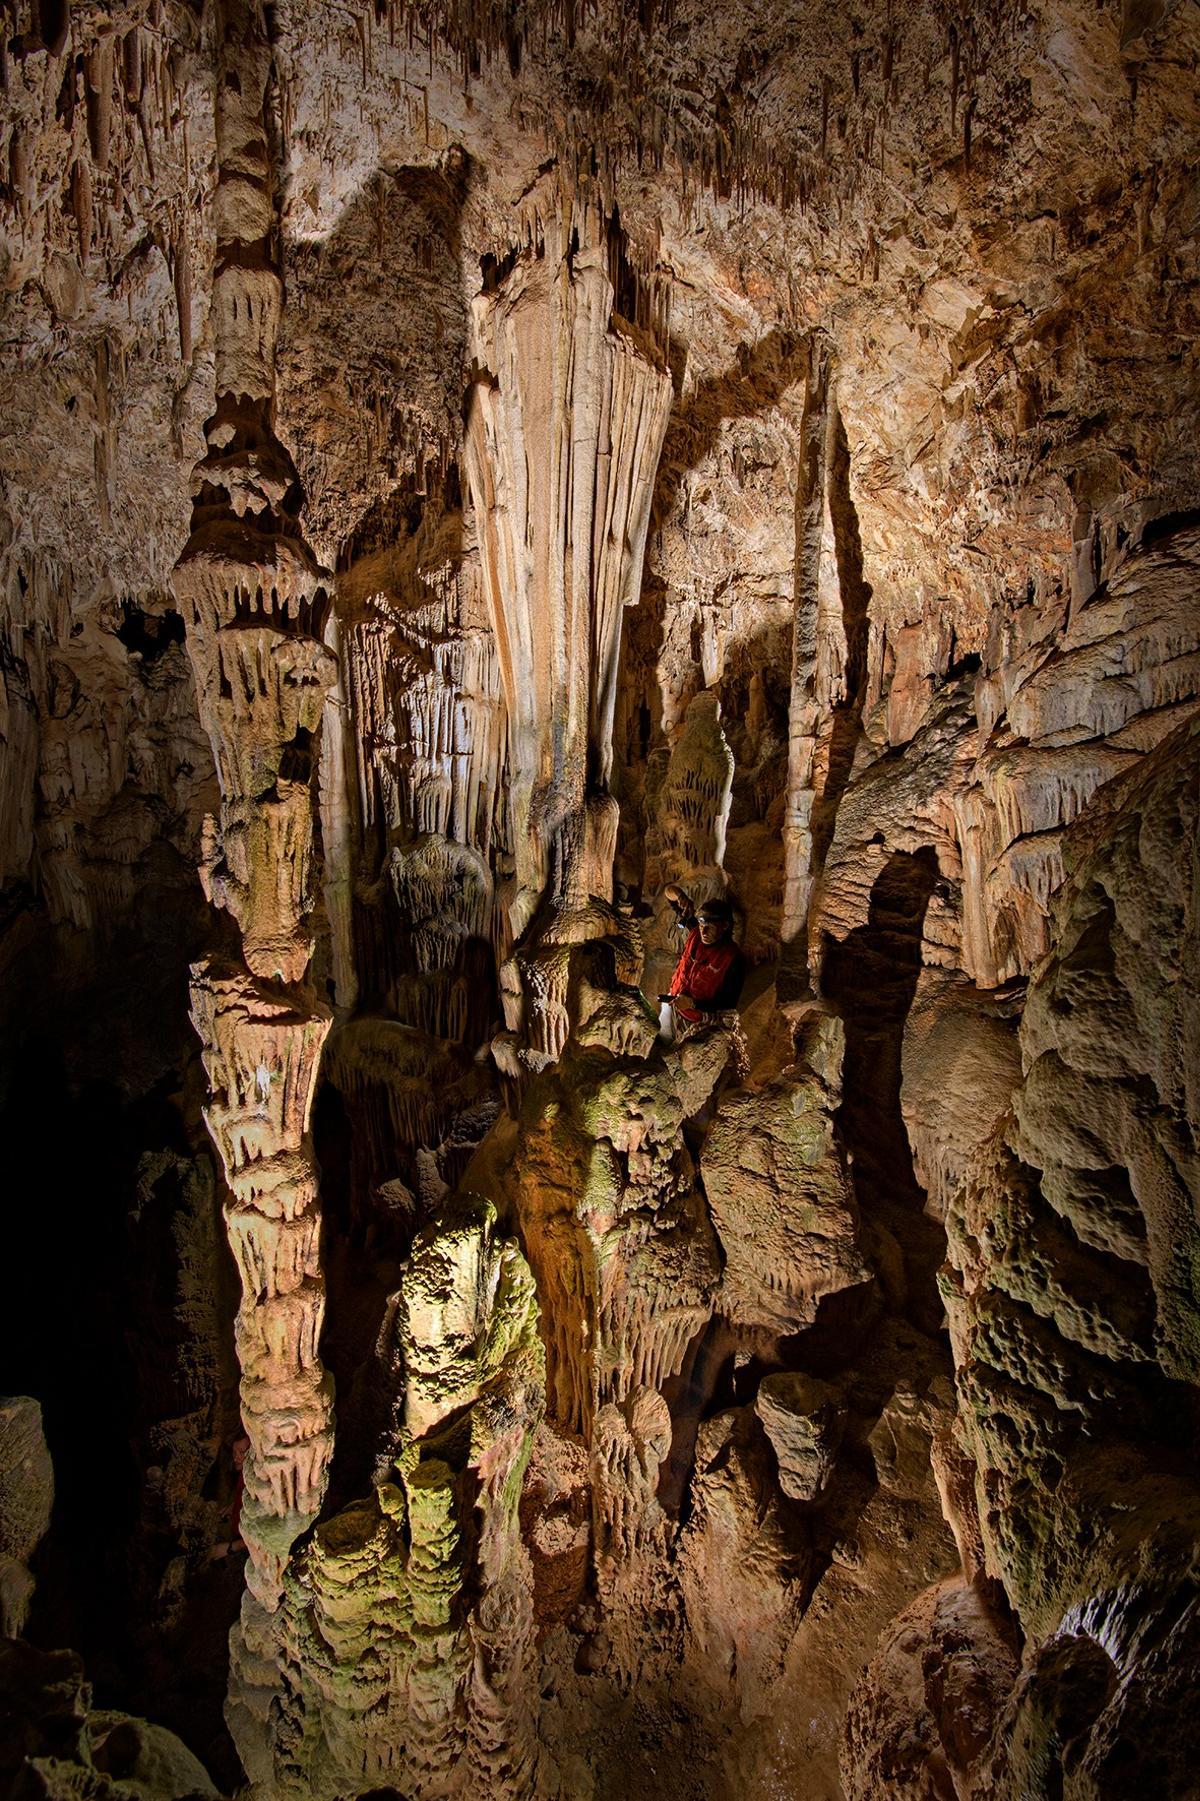 La cueva sorprendió a los arqueólogos por su belleza mineral y su estado de conservación